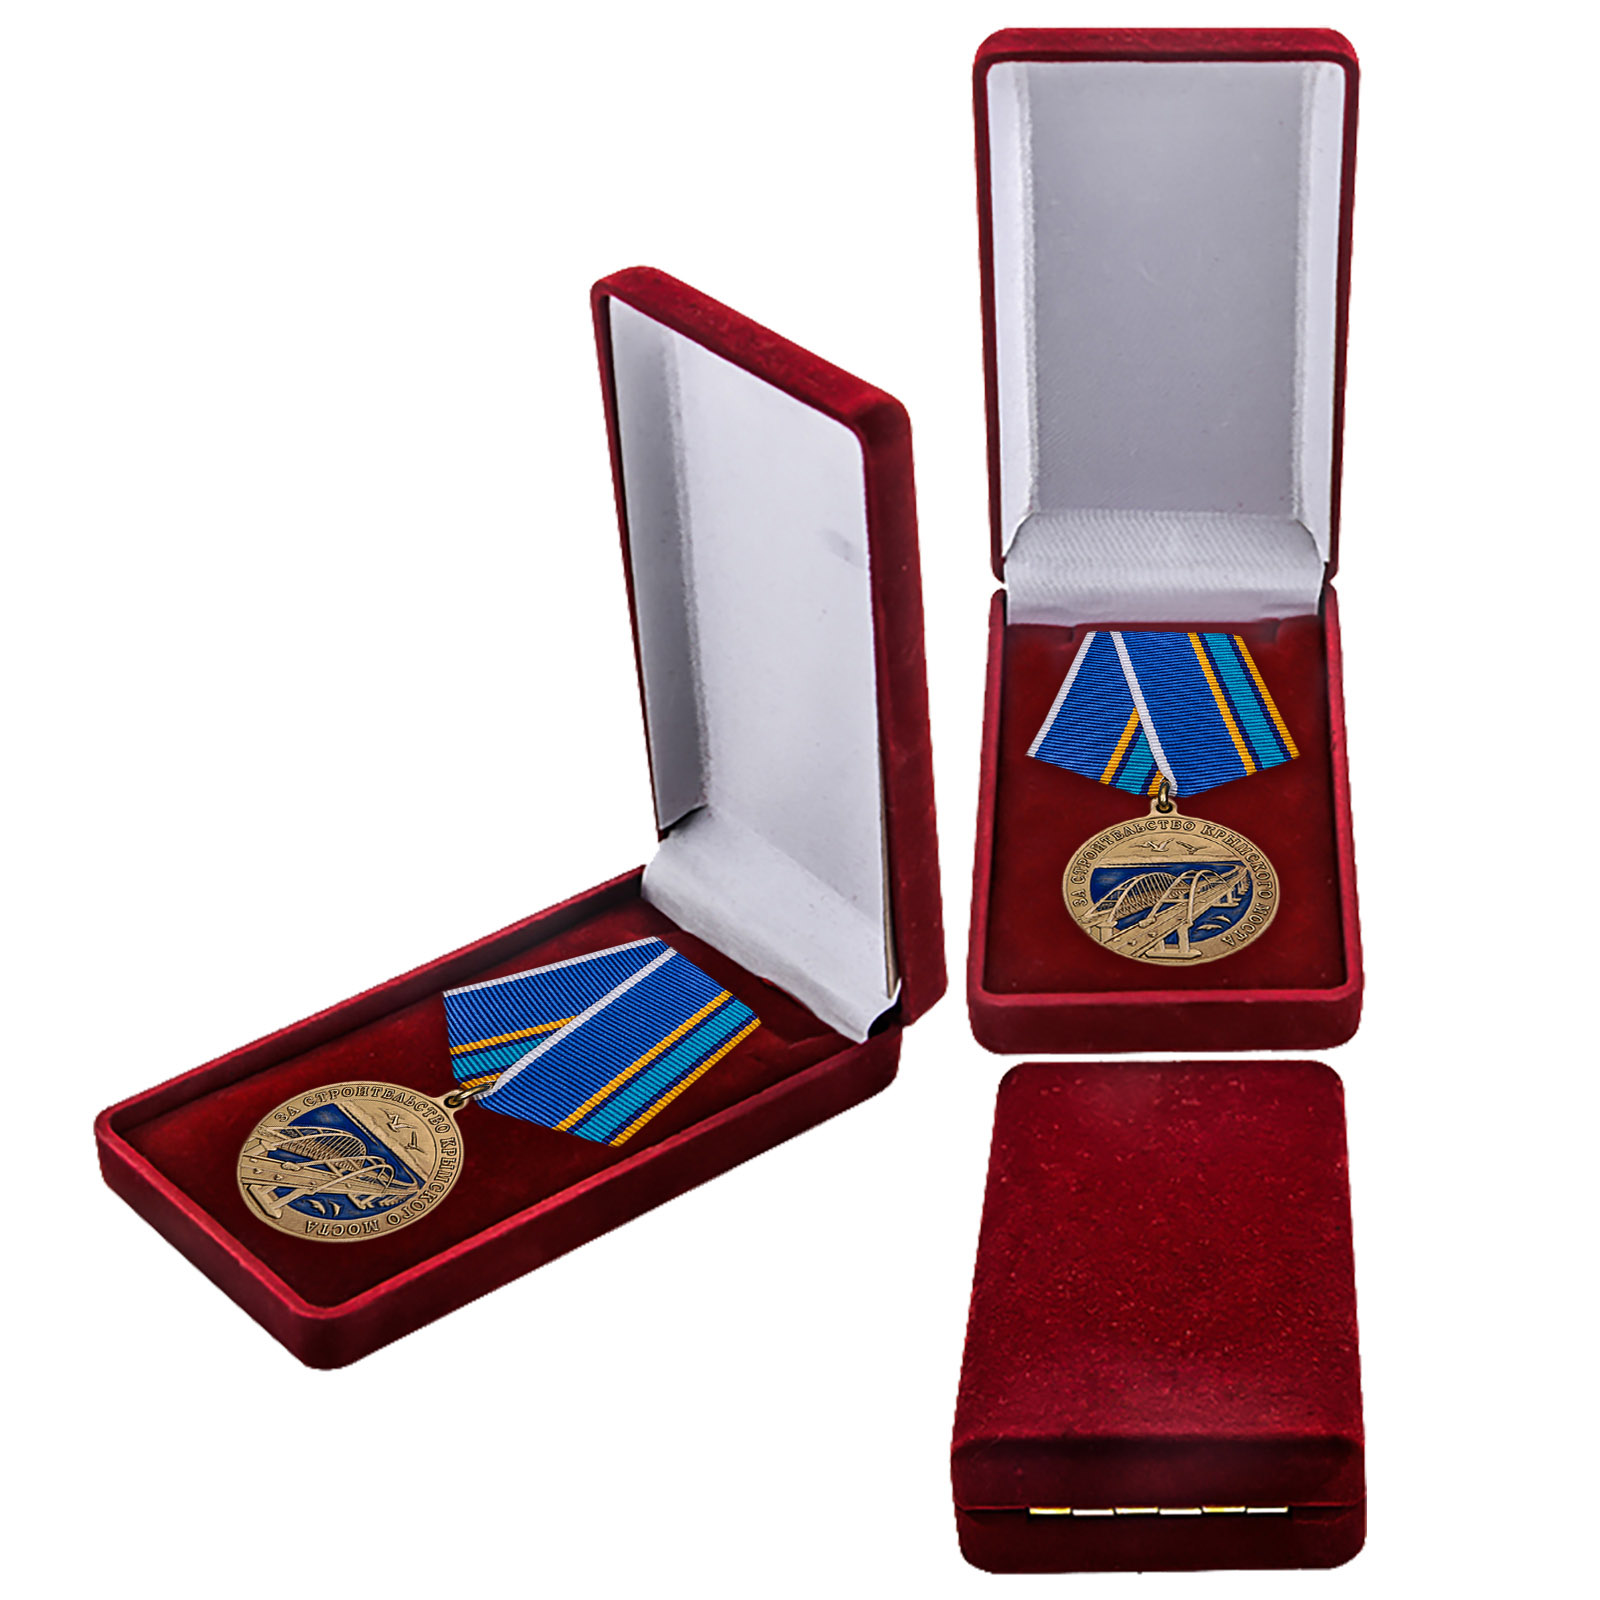 Купить памятную медаль "За строительство Крымского моста" онлайн с доставкой